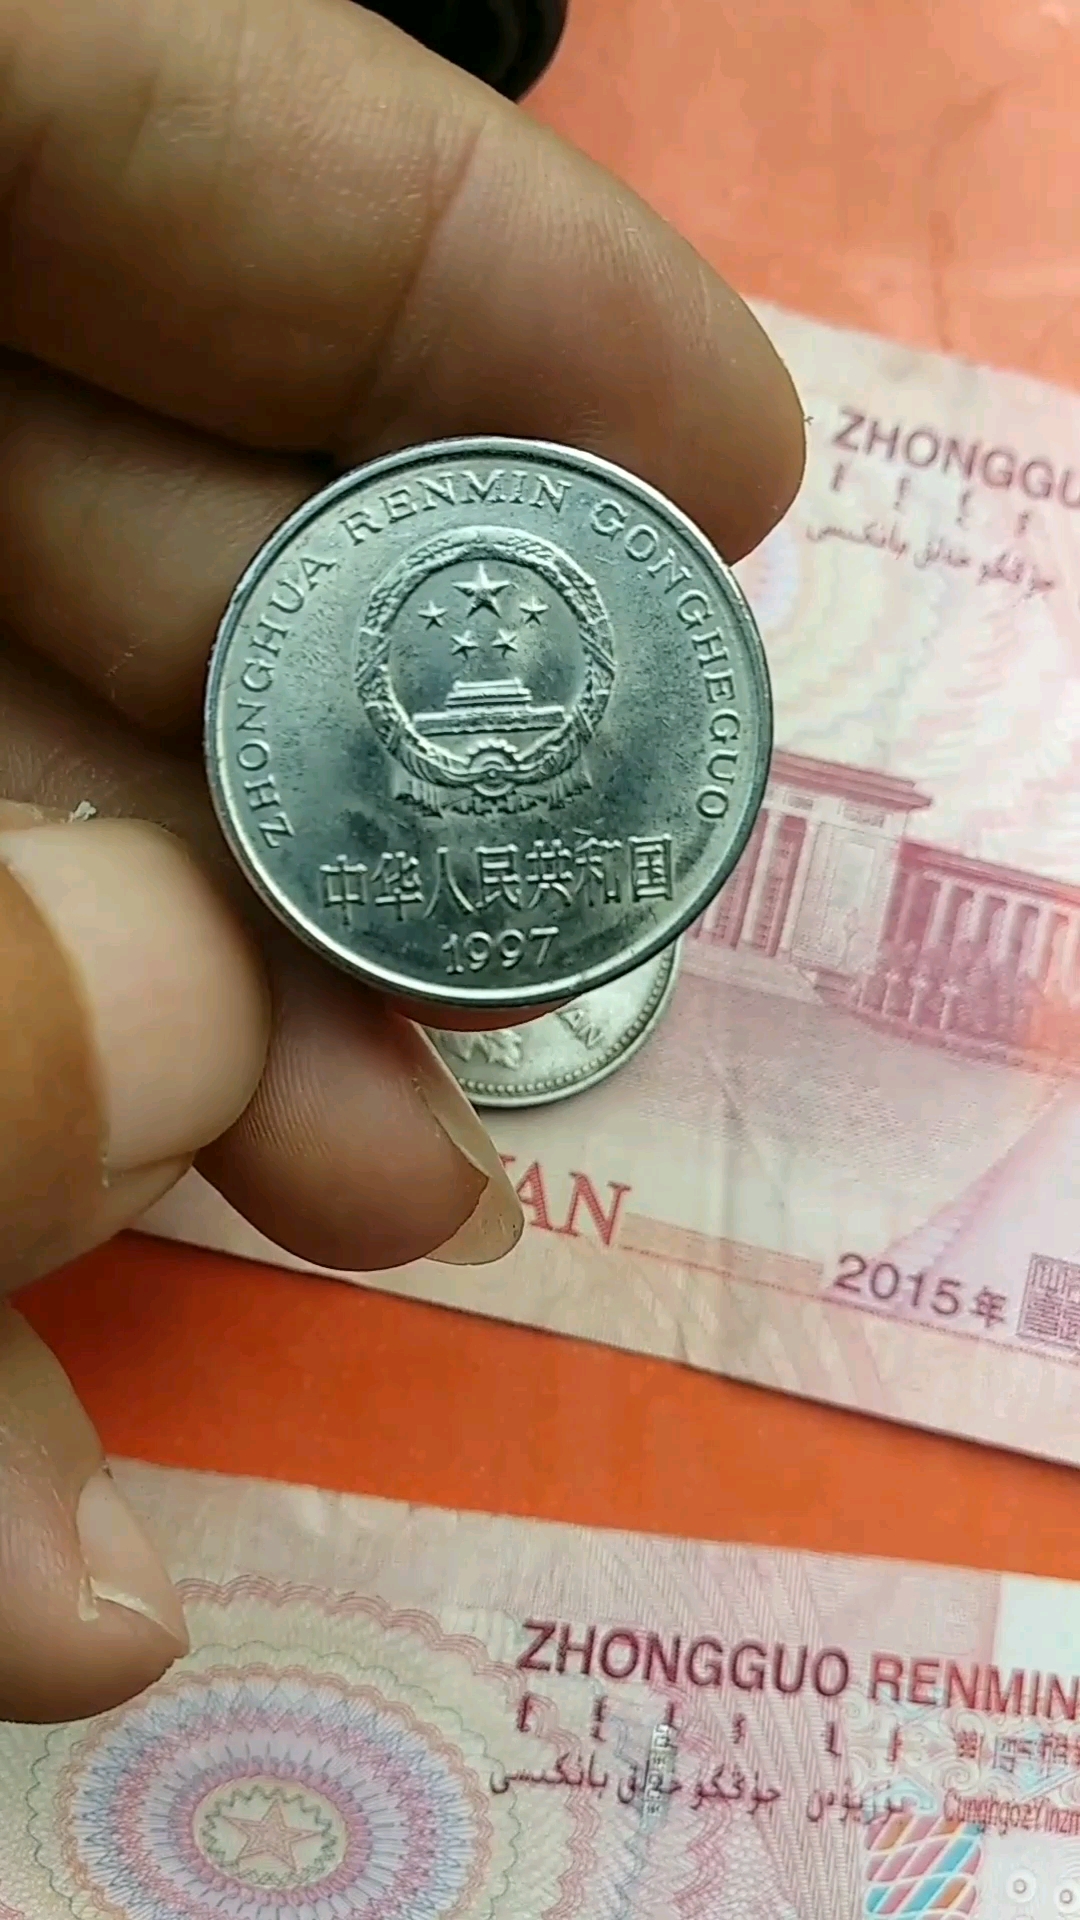 2000年国徽硬币图片